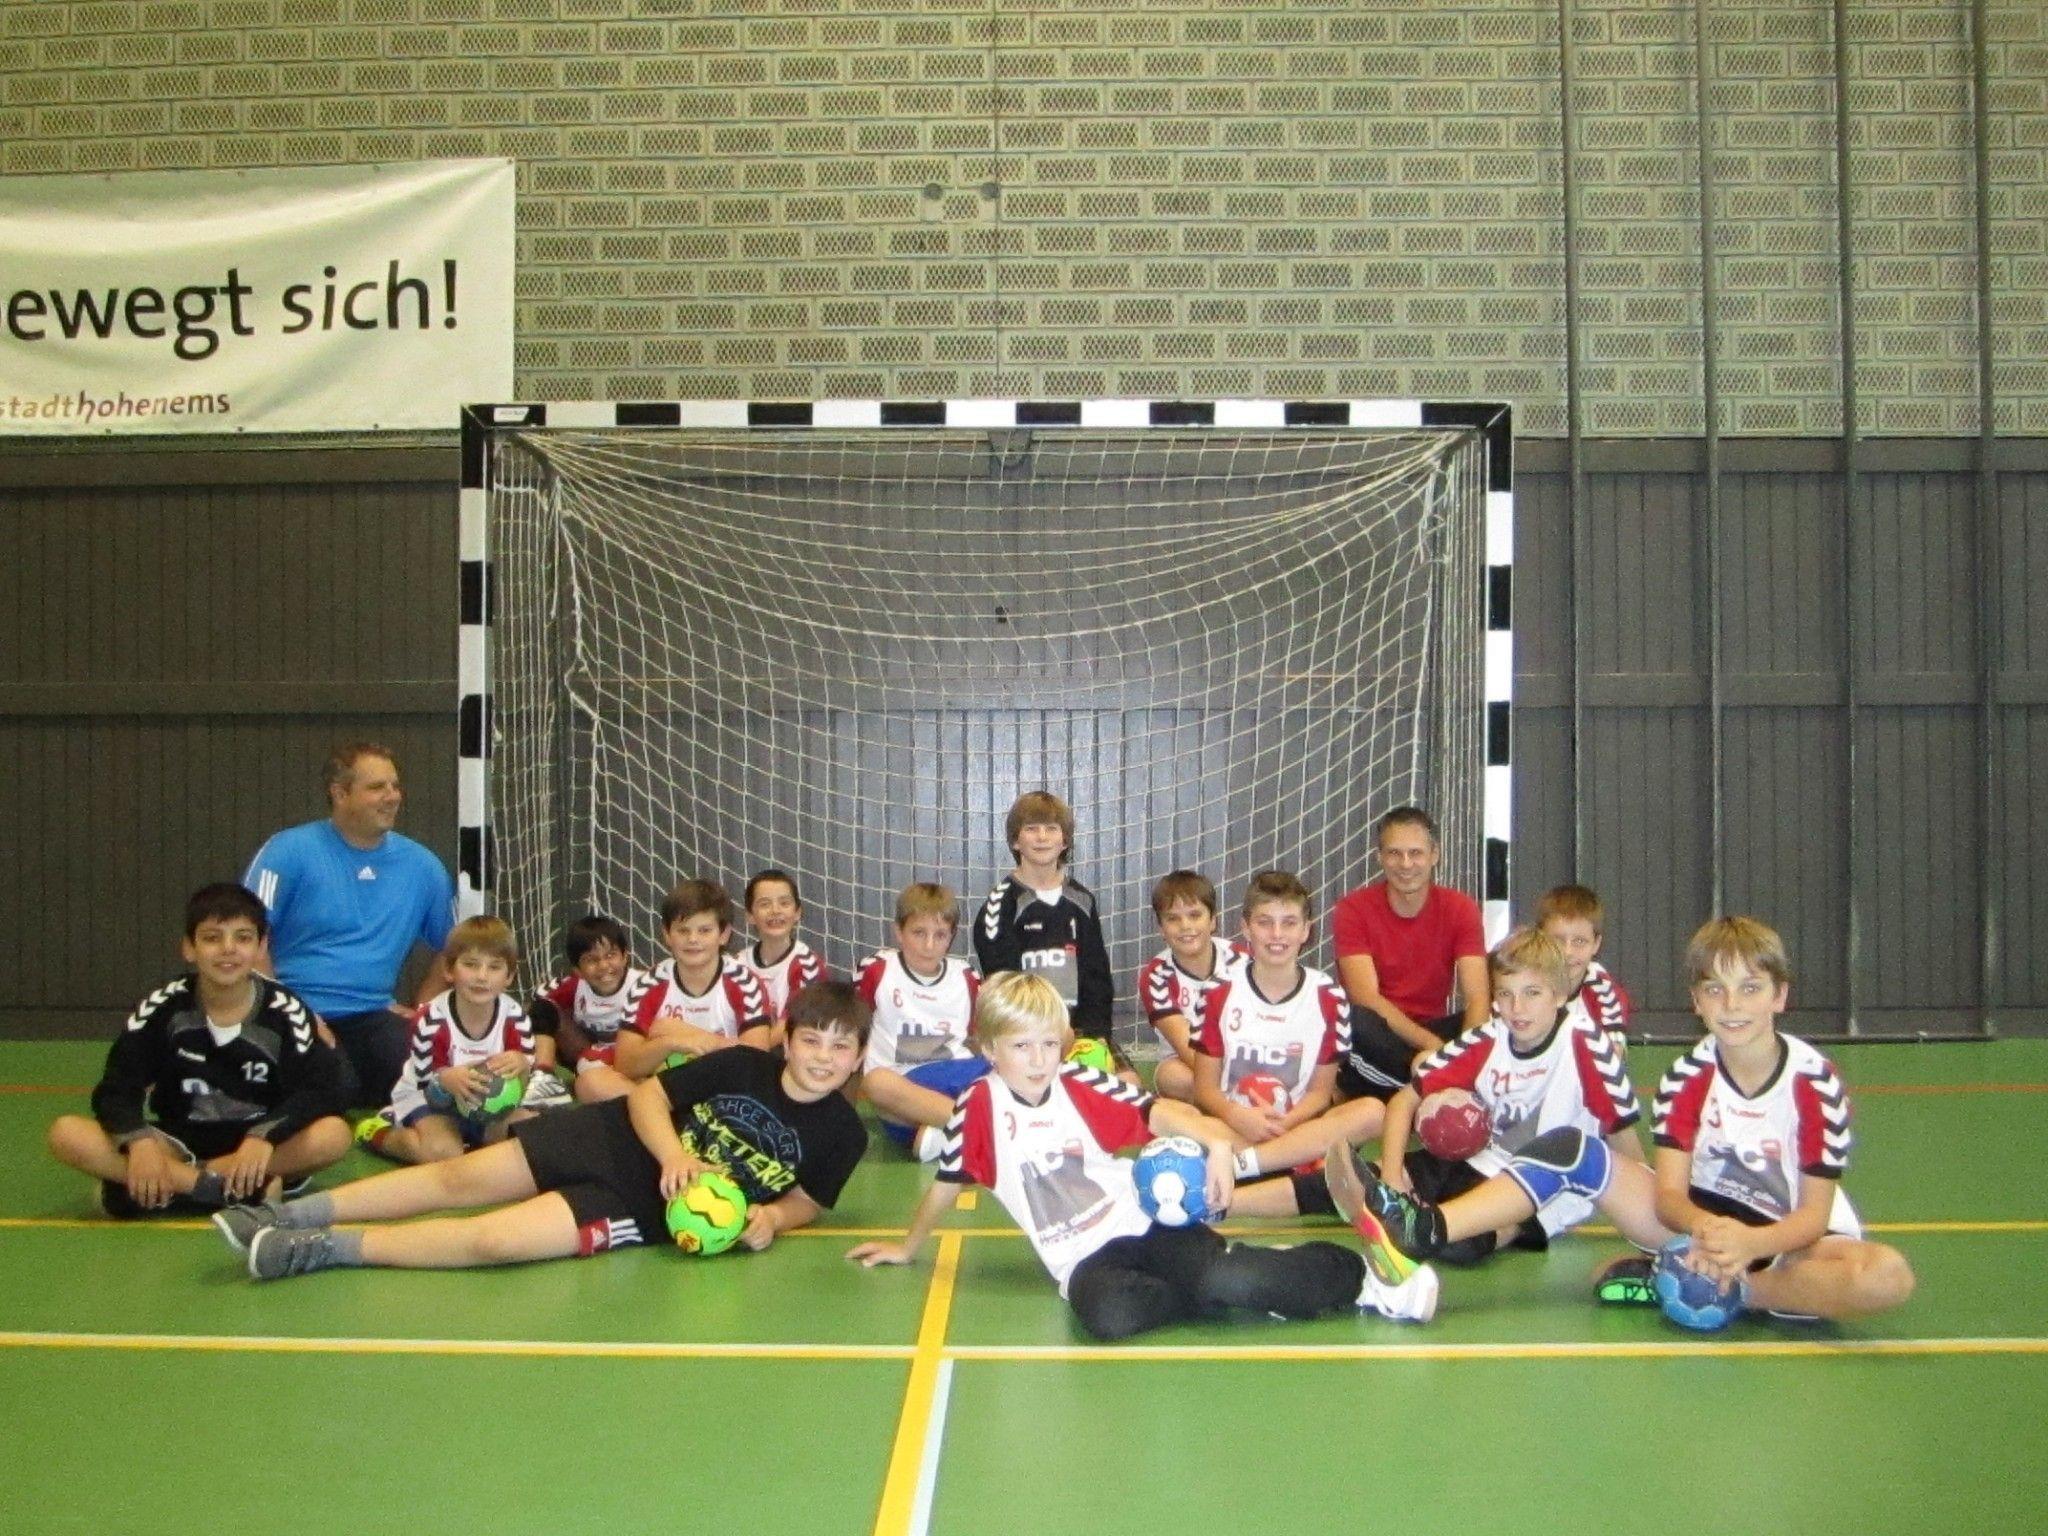 Die U10 Mannschaft des Handballclubs "Tectum" hat Spaß am Training